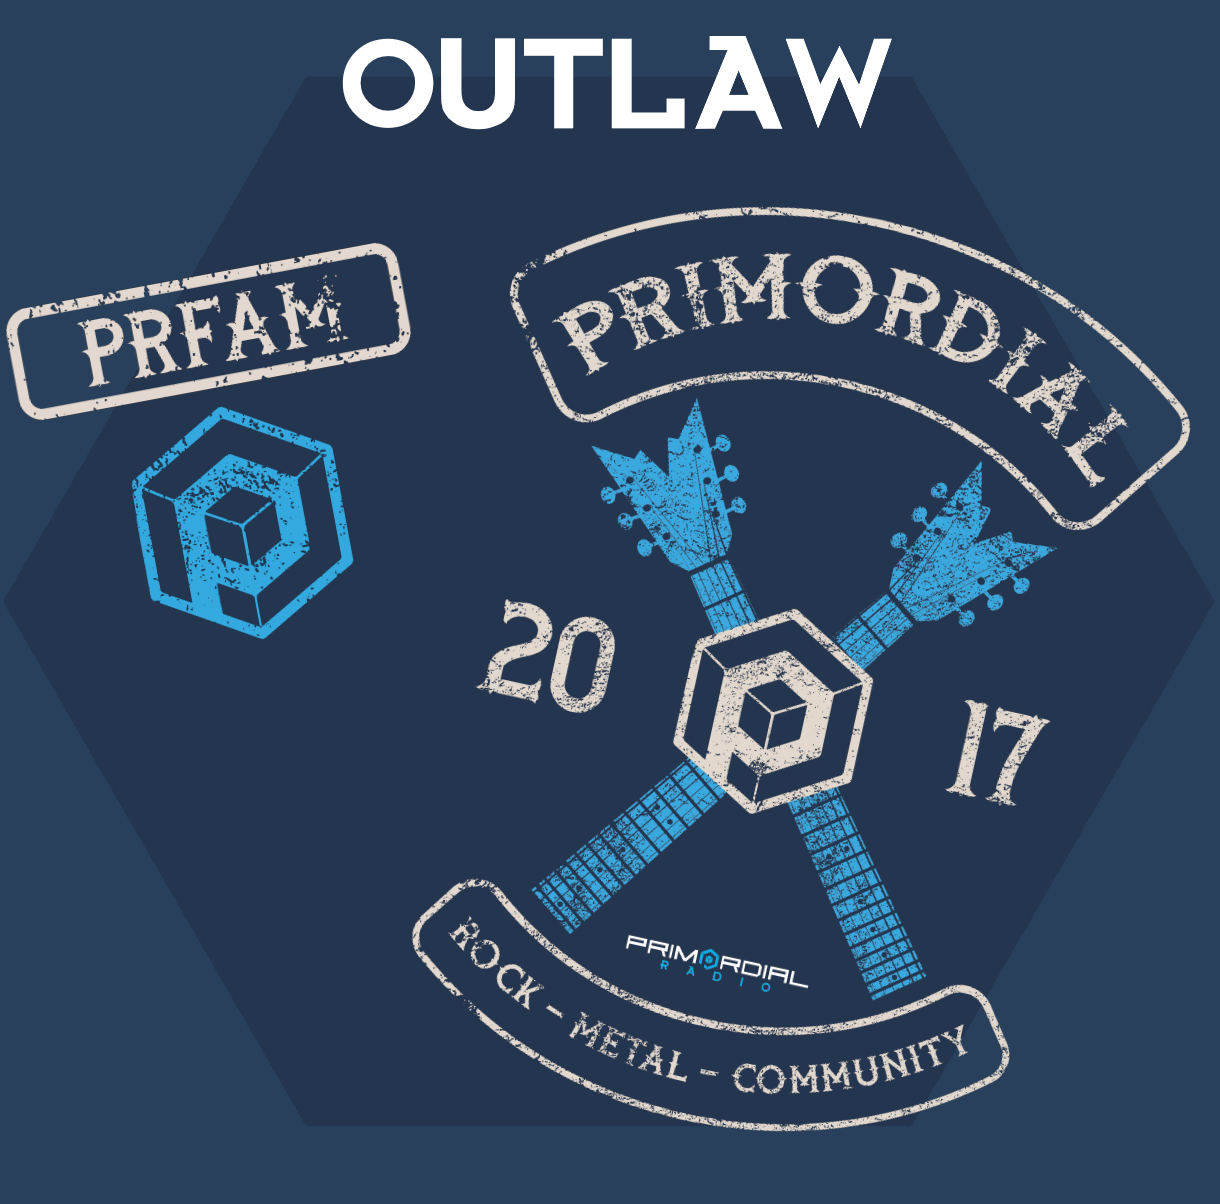 Outlaw #prfam designed merch